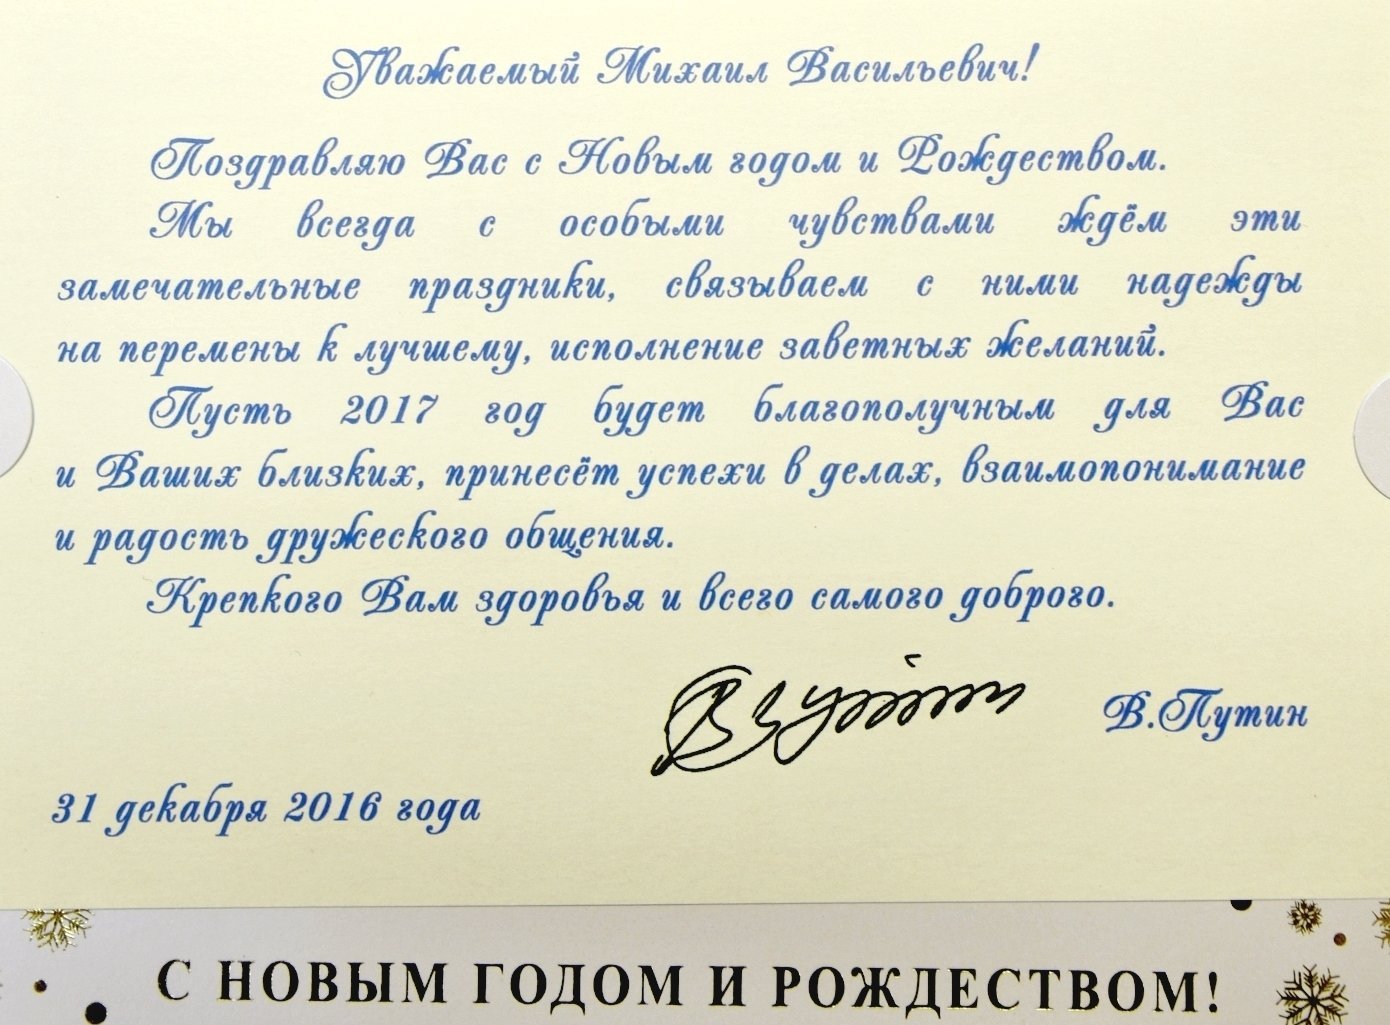 Дата обращения президента. Поздравление губернатора с новым годом. Официальные поздравление с днём рождения от Путина. Официальное поздравление президента с днем рождения. Поздравление с новым годом официальное от губернатора.